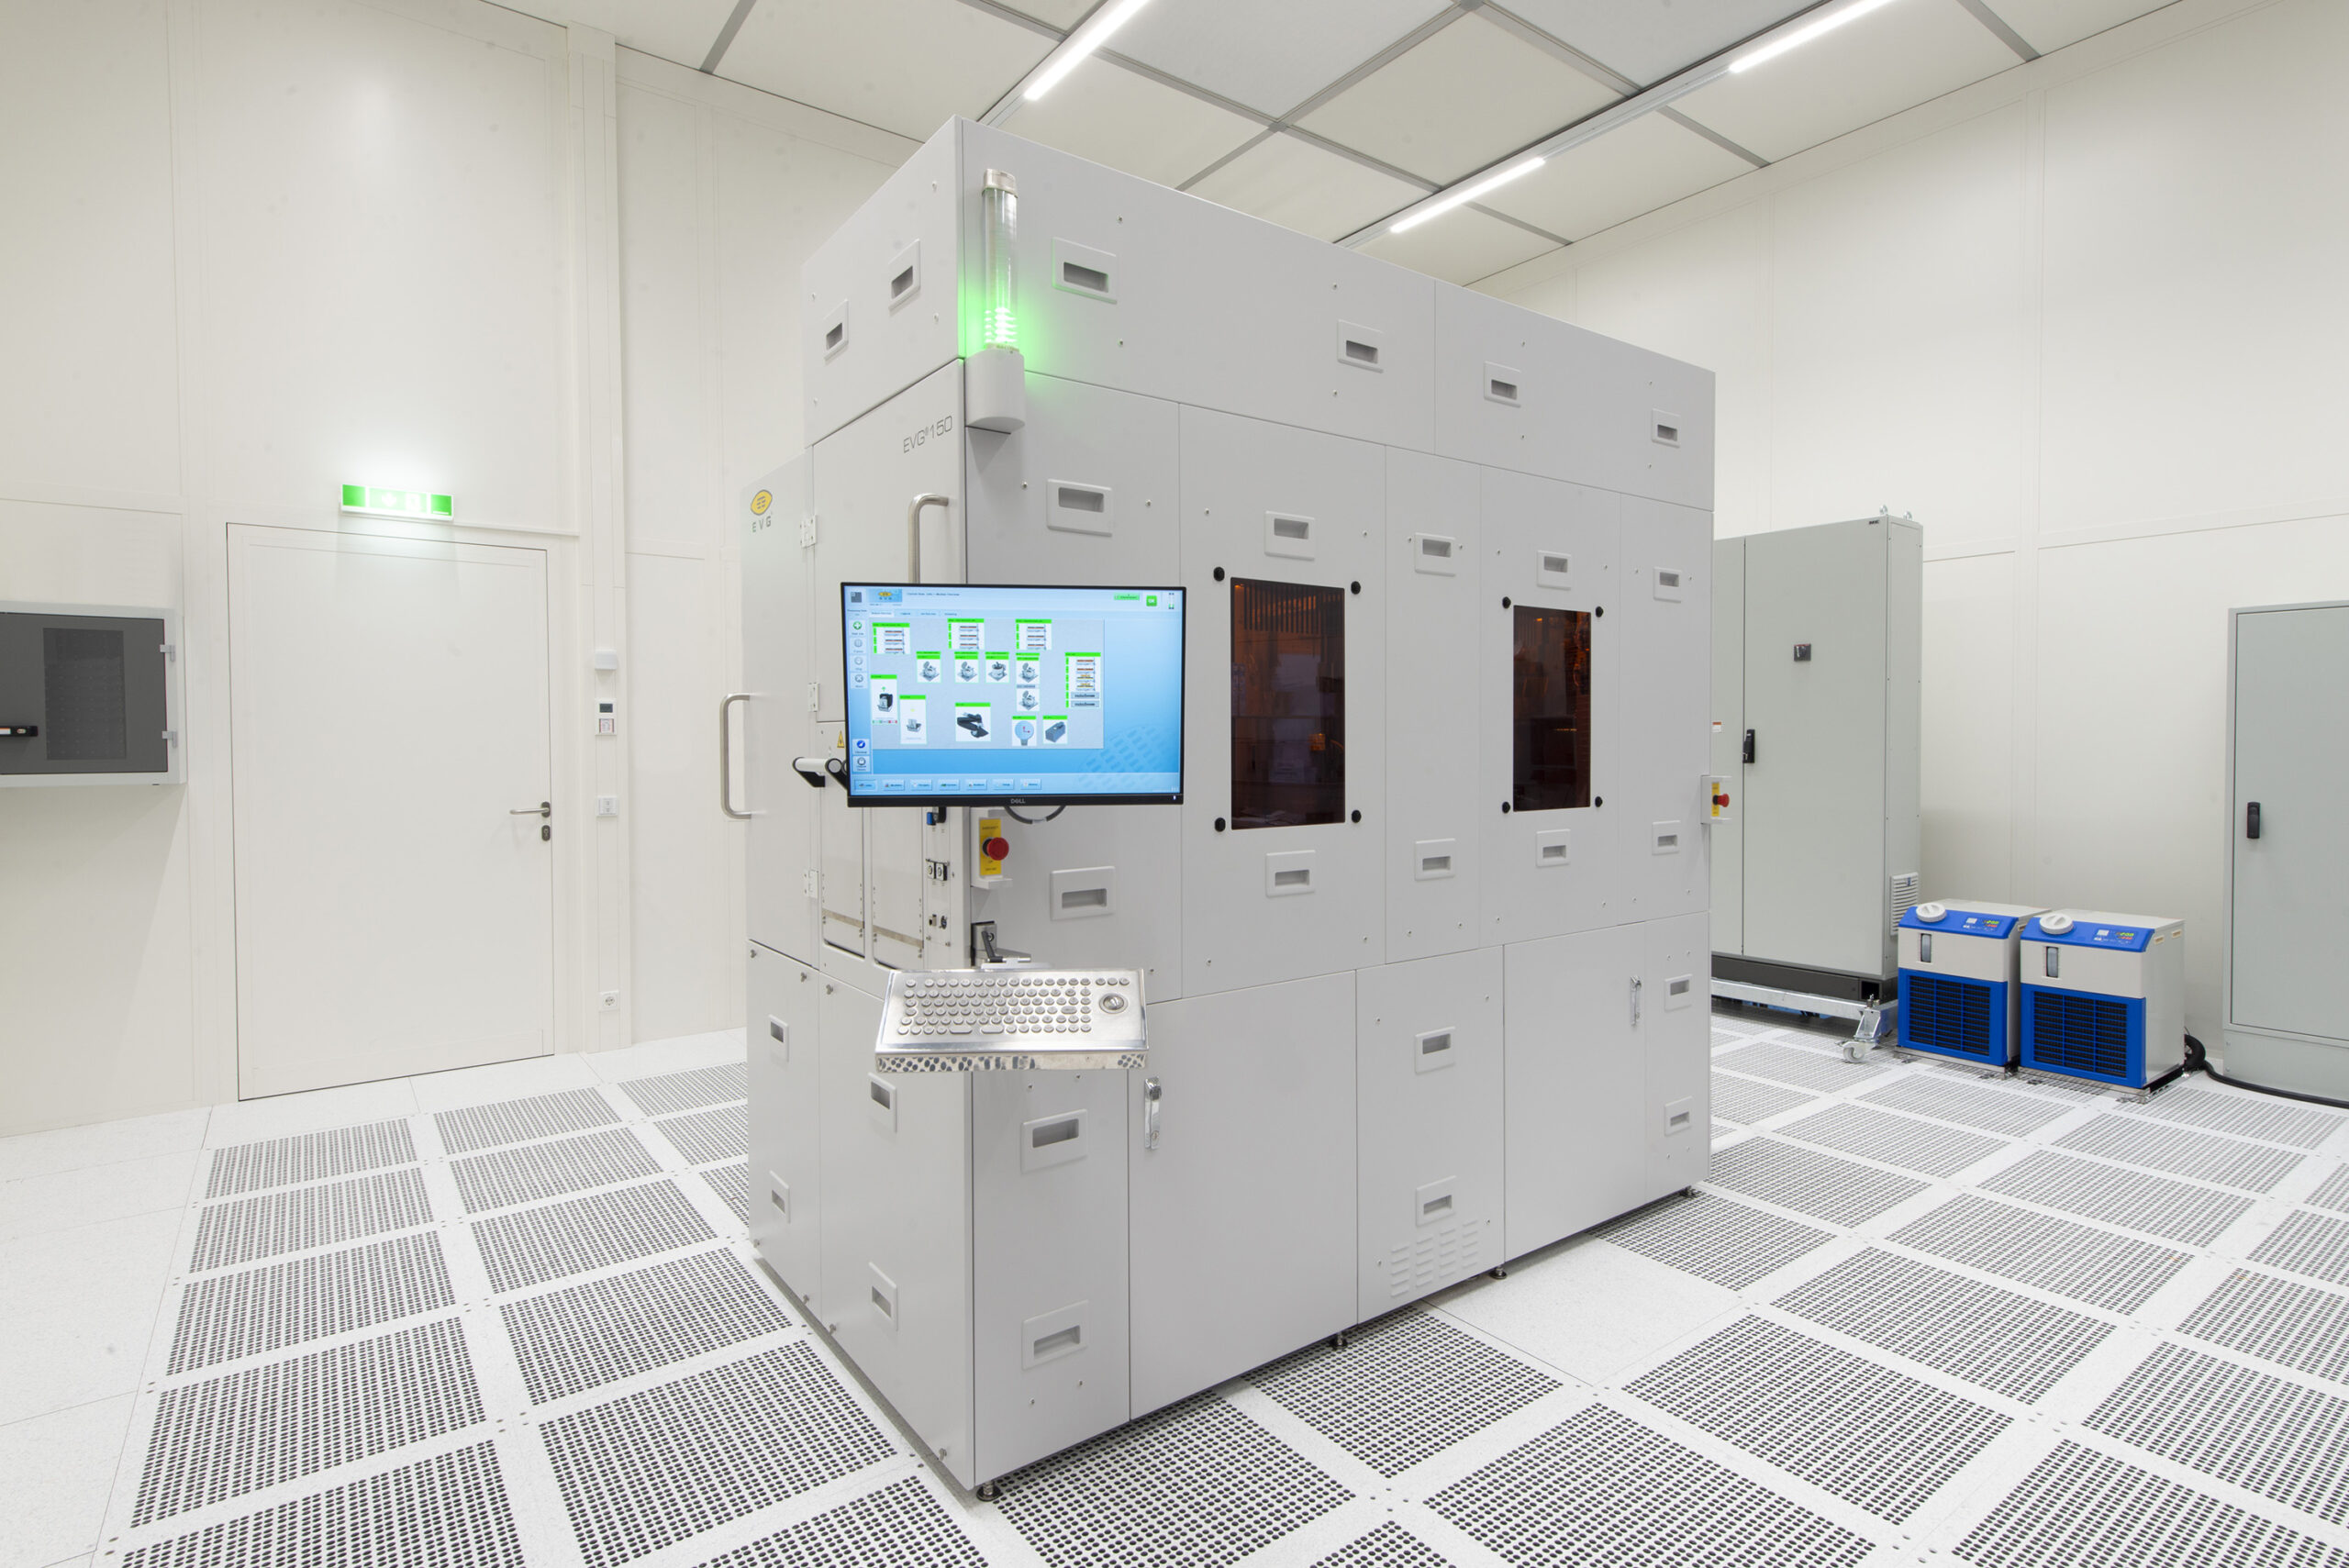 Grupa EV zdobywa pozycję lidera w dziedzinie litografii optycznej dzięki platformie EVG150 następnej generacji do obróbki fotorezystu